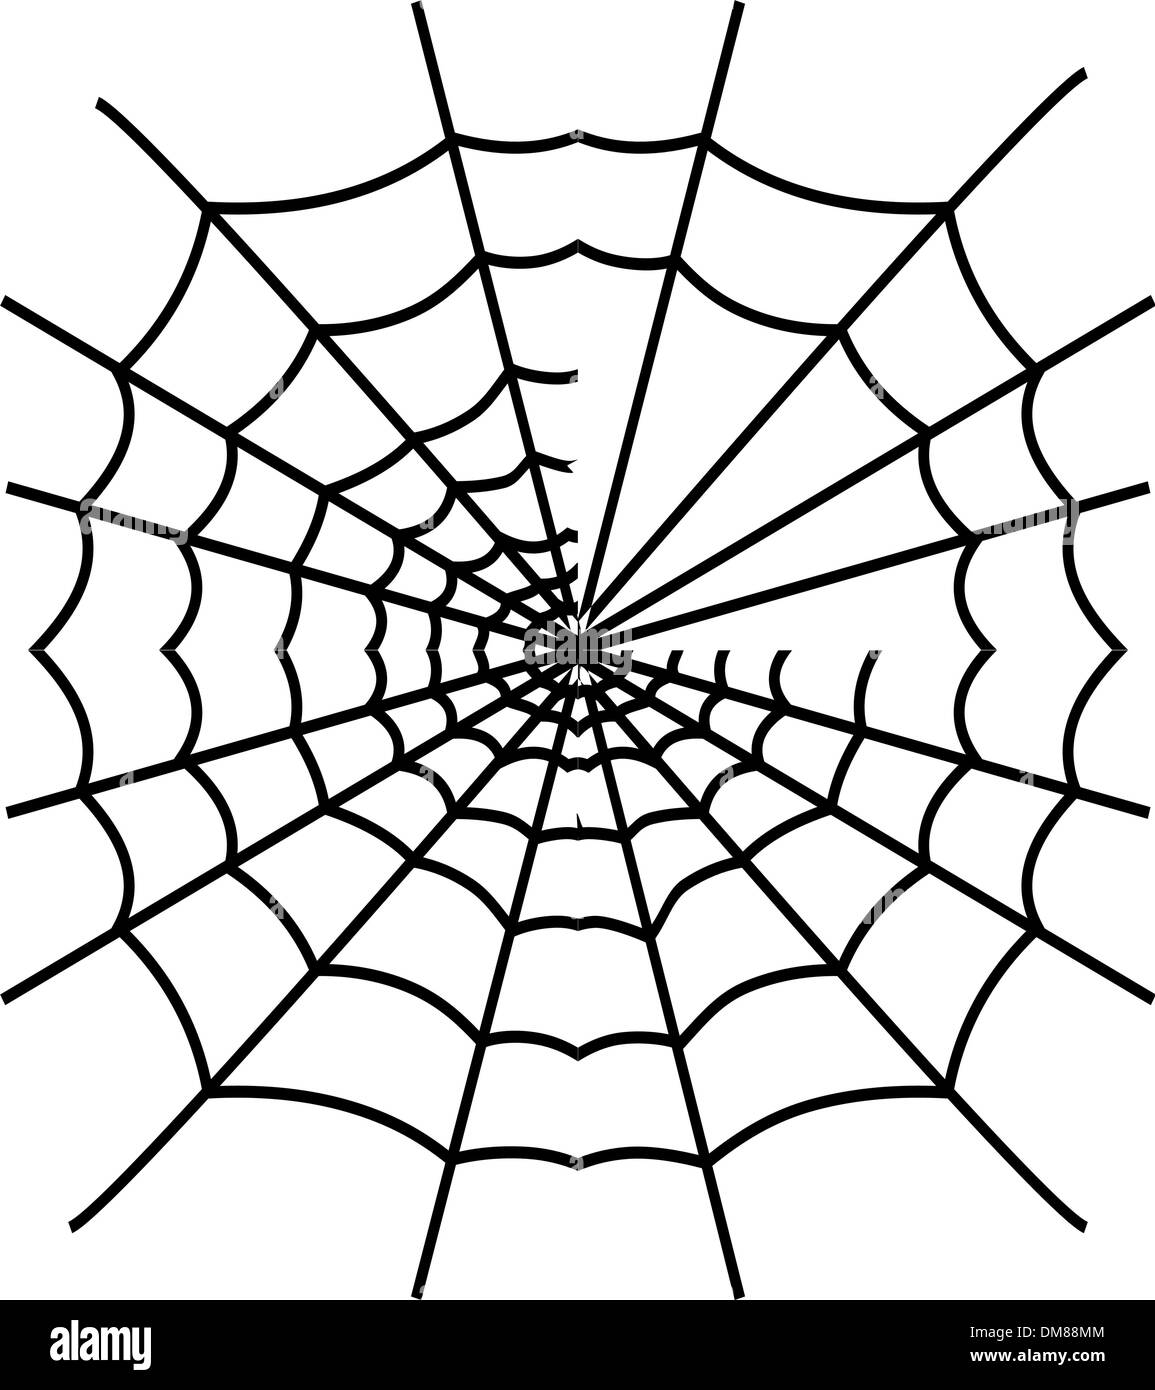 Black spiderweb isolated Stock Vector